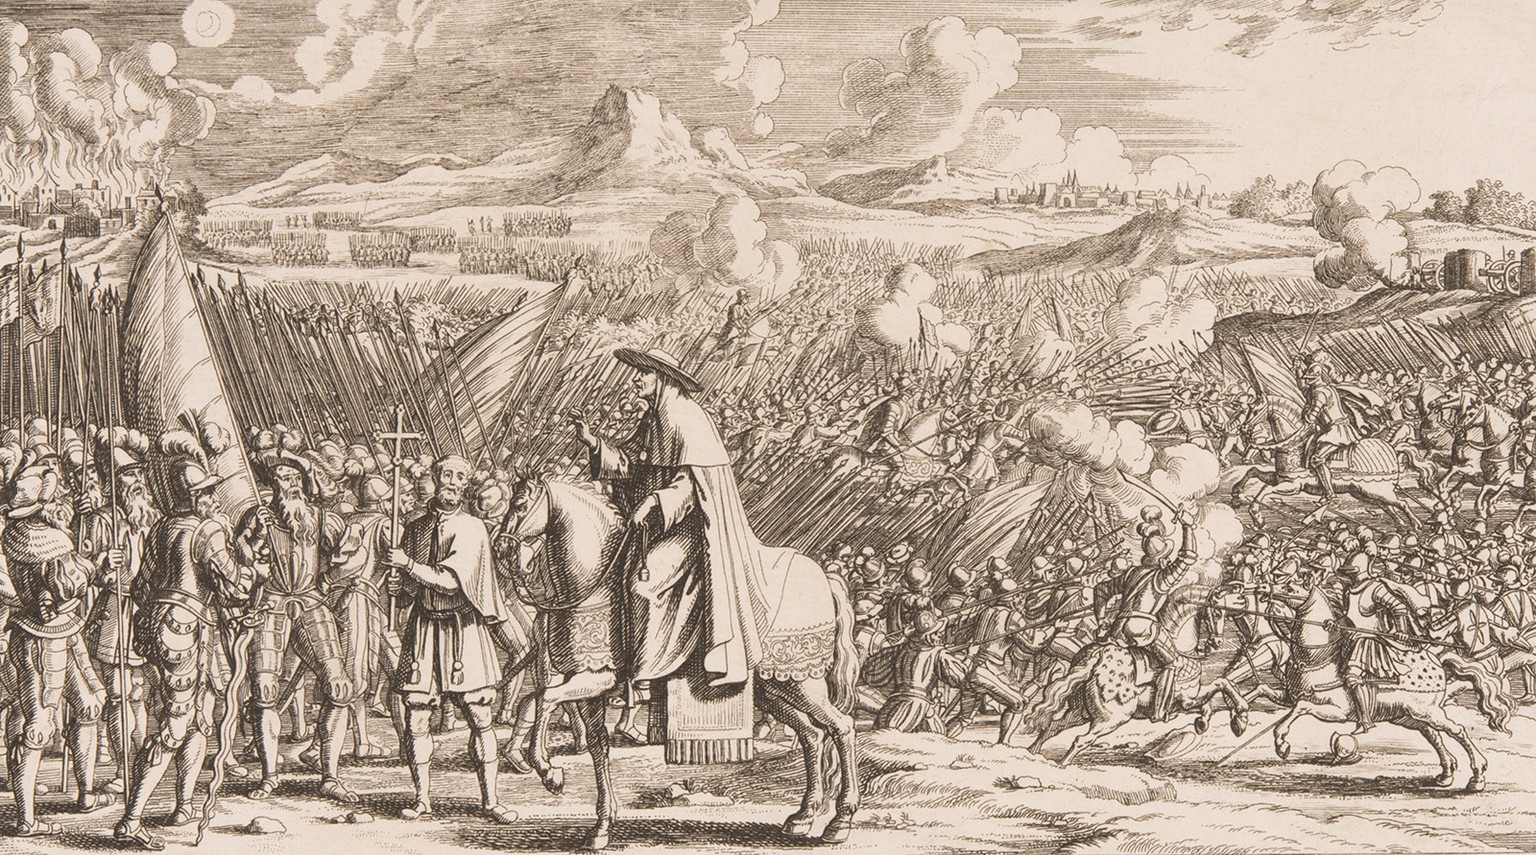 Matthäus Schiner auf dem Schlachtfeld vor Marignano, 1515. Stich von Johann Melchior Füssli, 1713.
https://permalink.nationalmuseum.ch/100100309